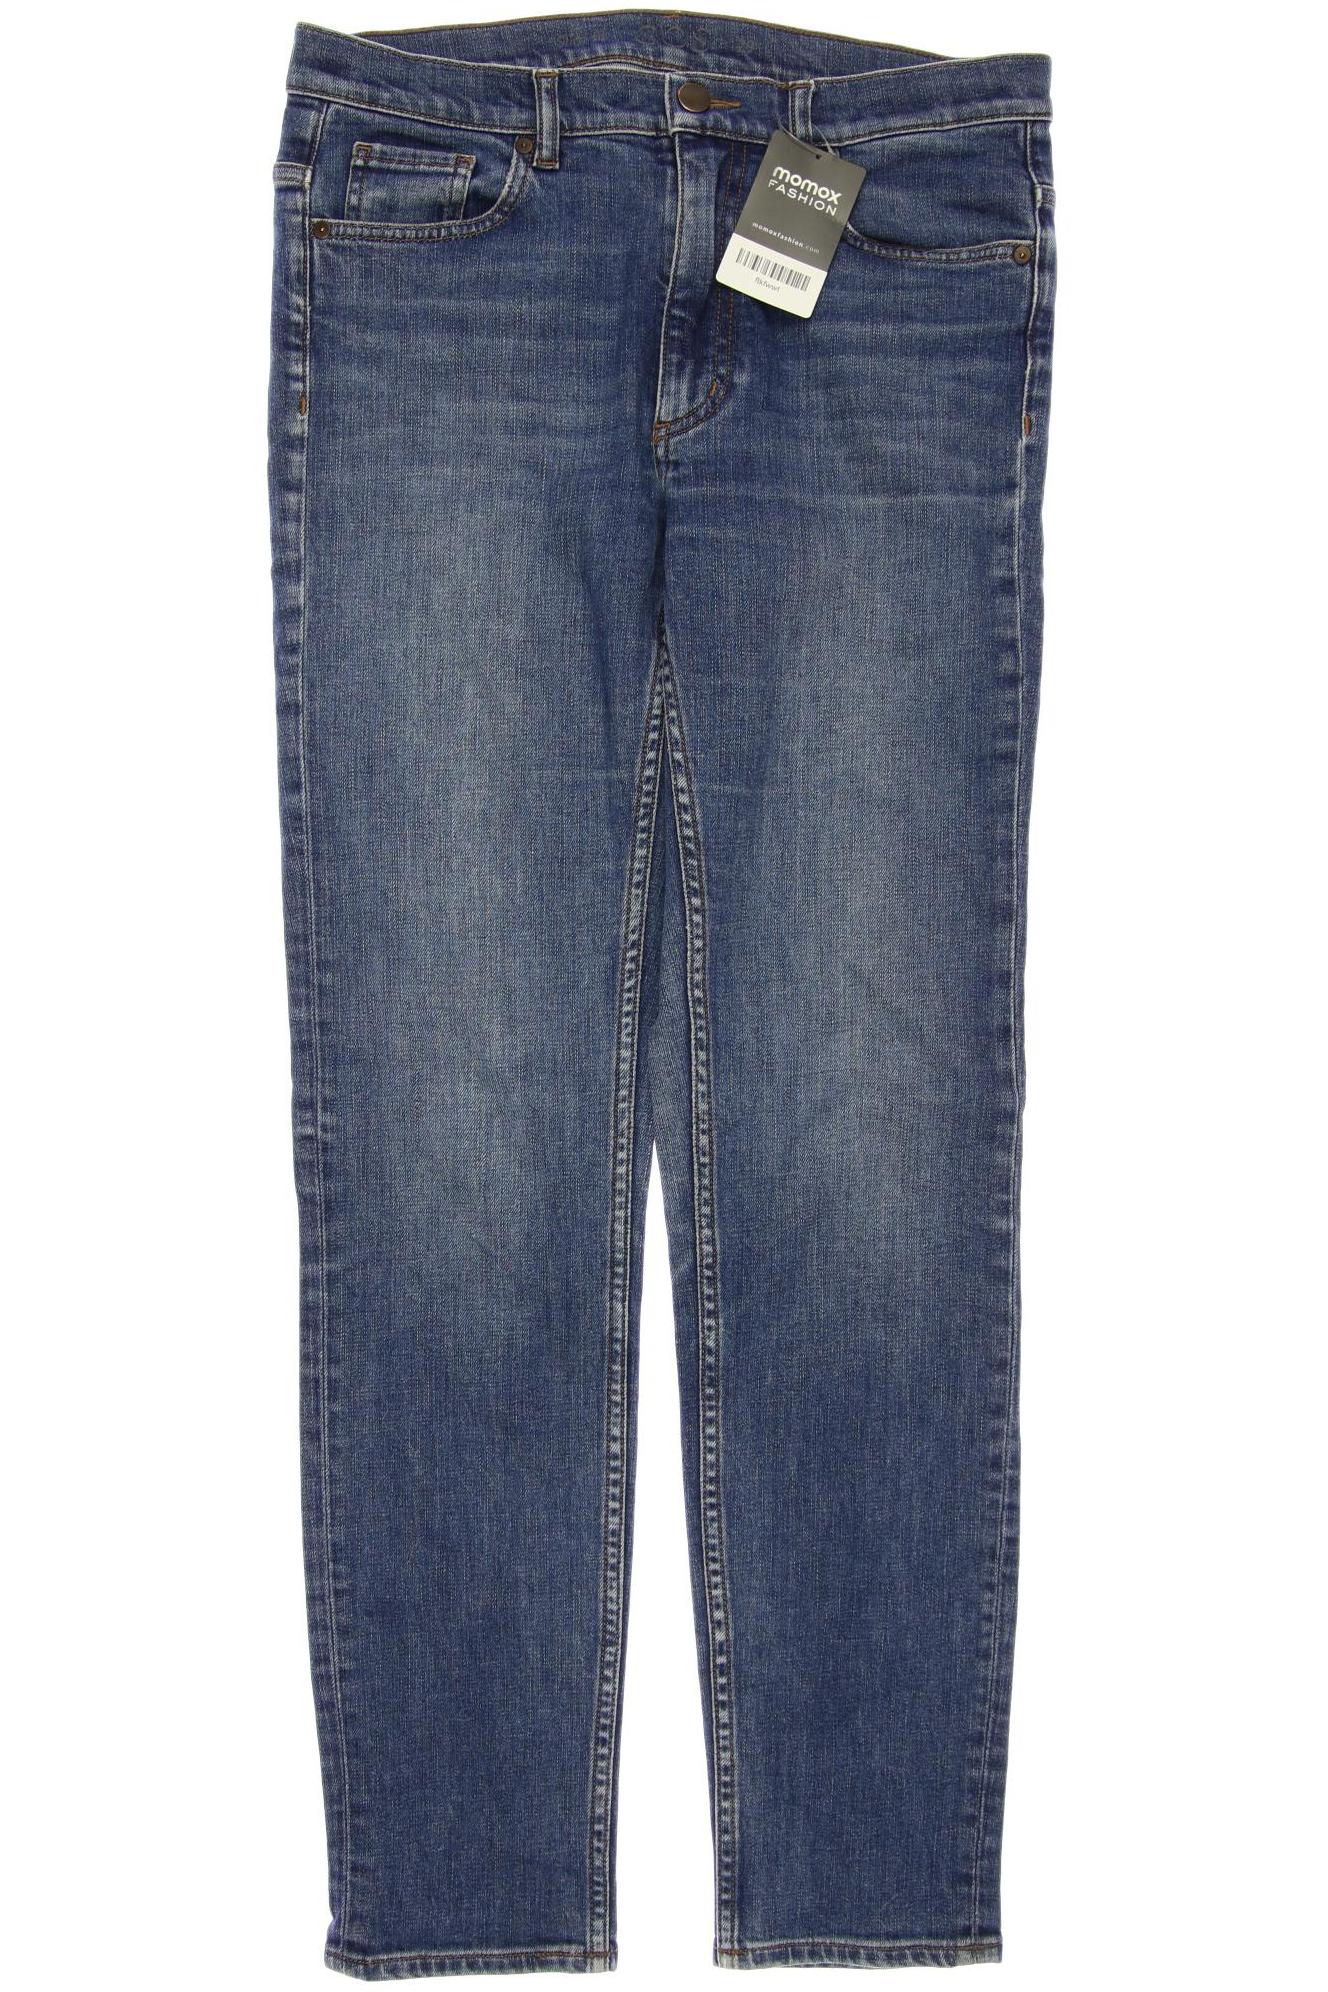 COS Damen Jeans, blau, Gr. 40 von COS